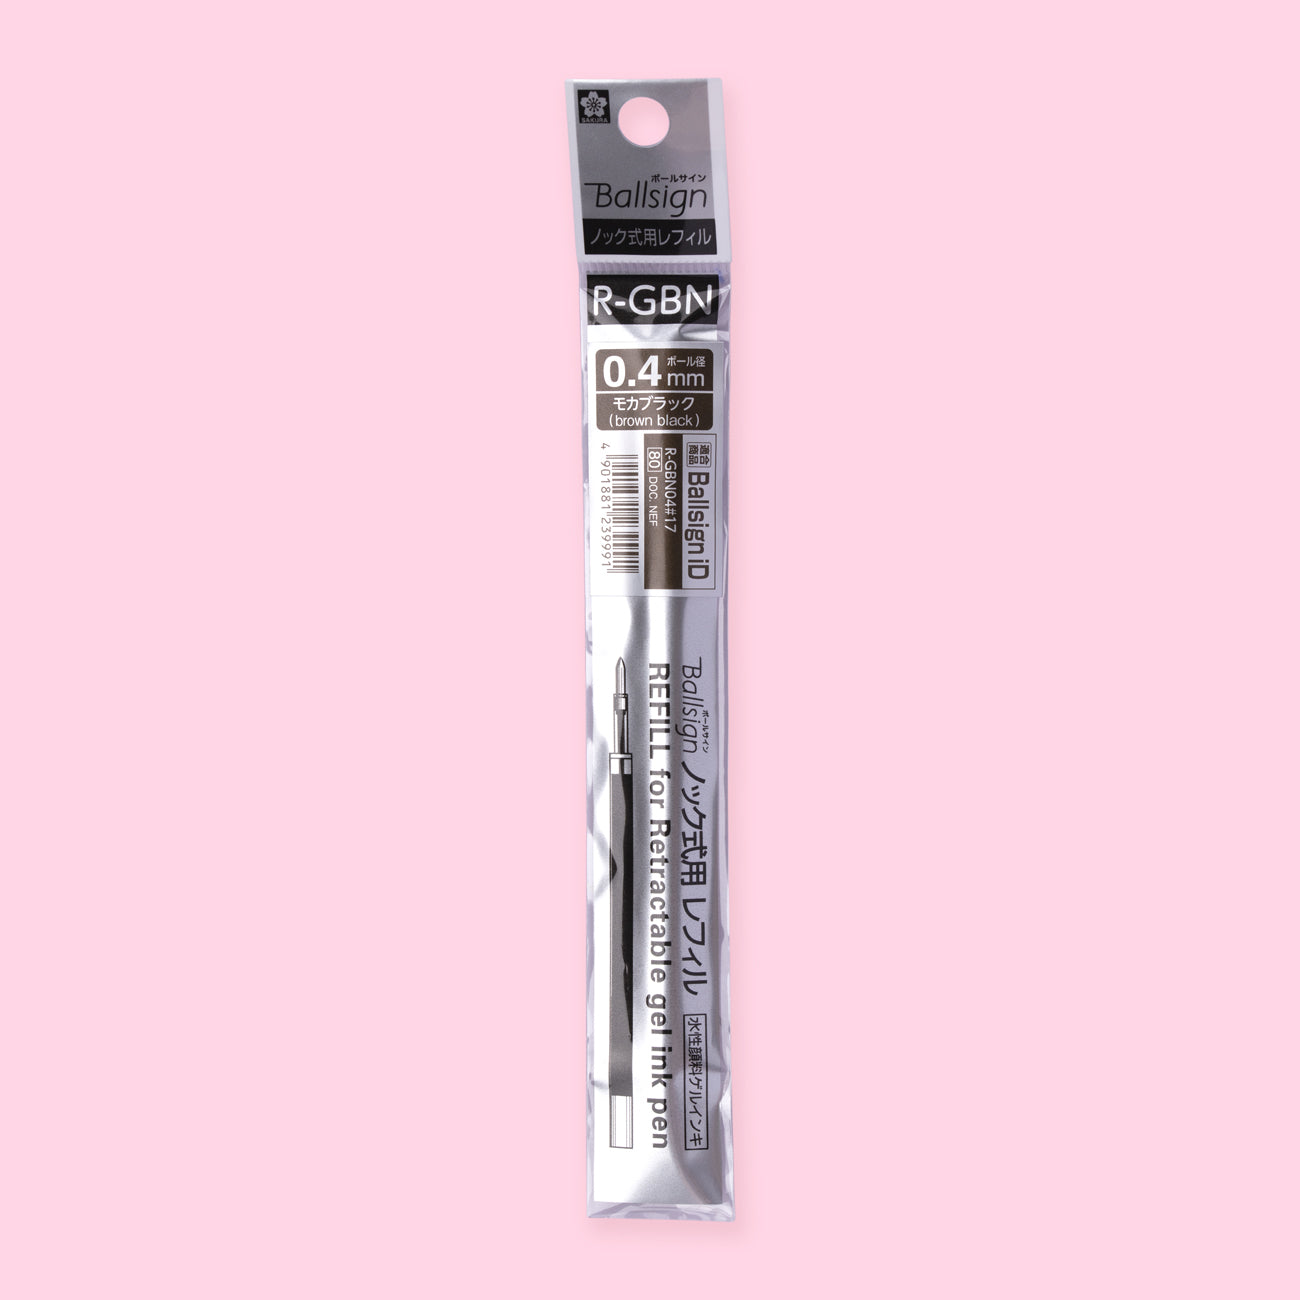 Sakura Ballsign iD Gel Pen Refill - Brown Black - 0.4 mm